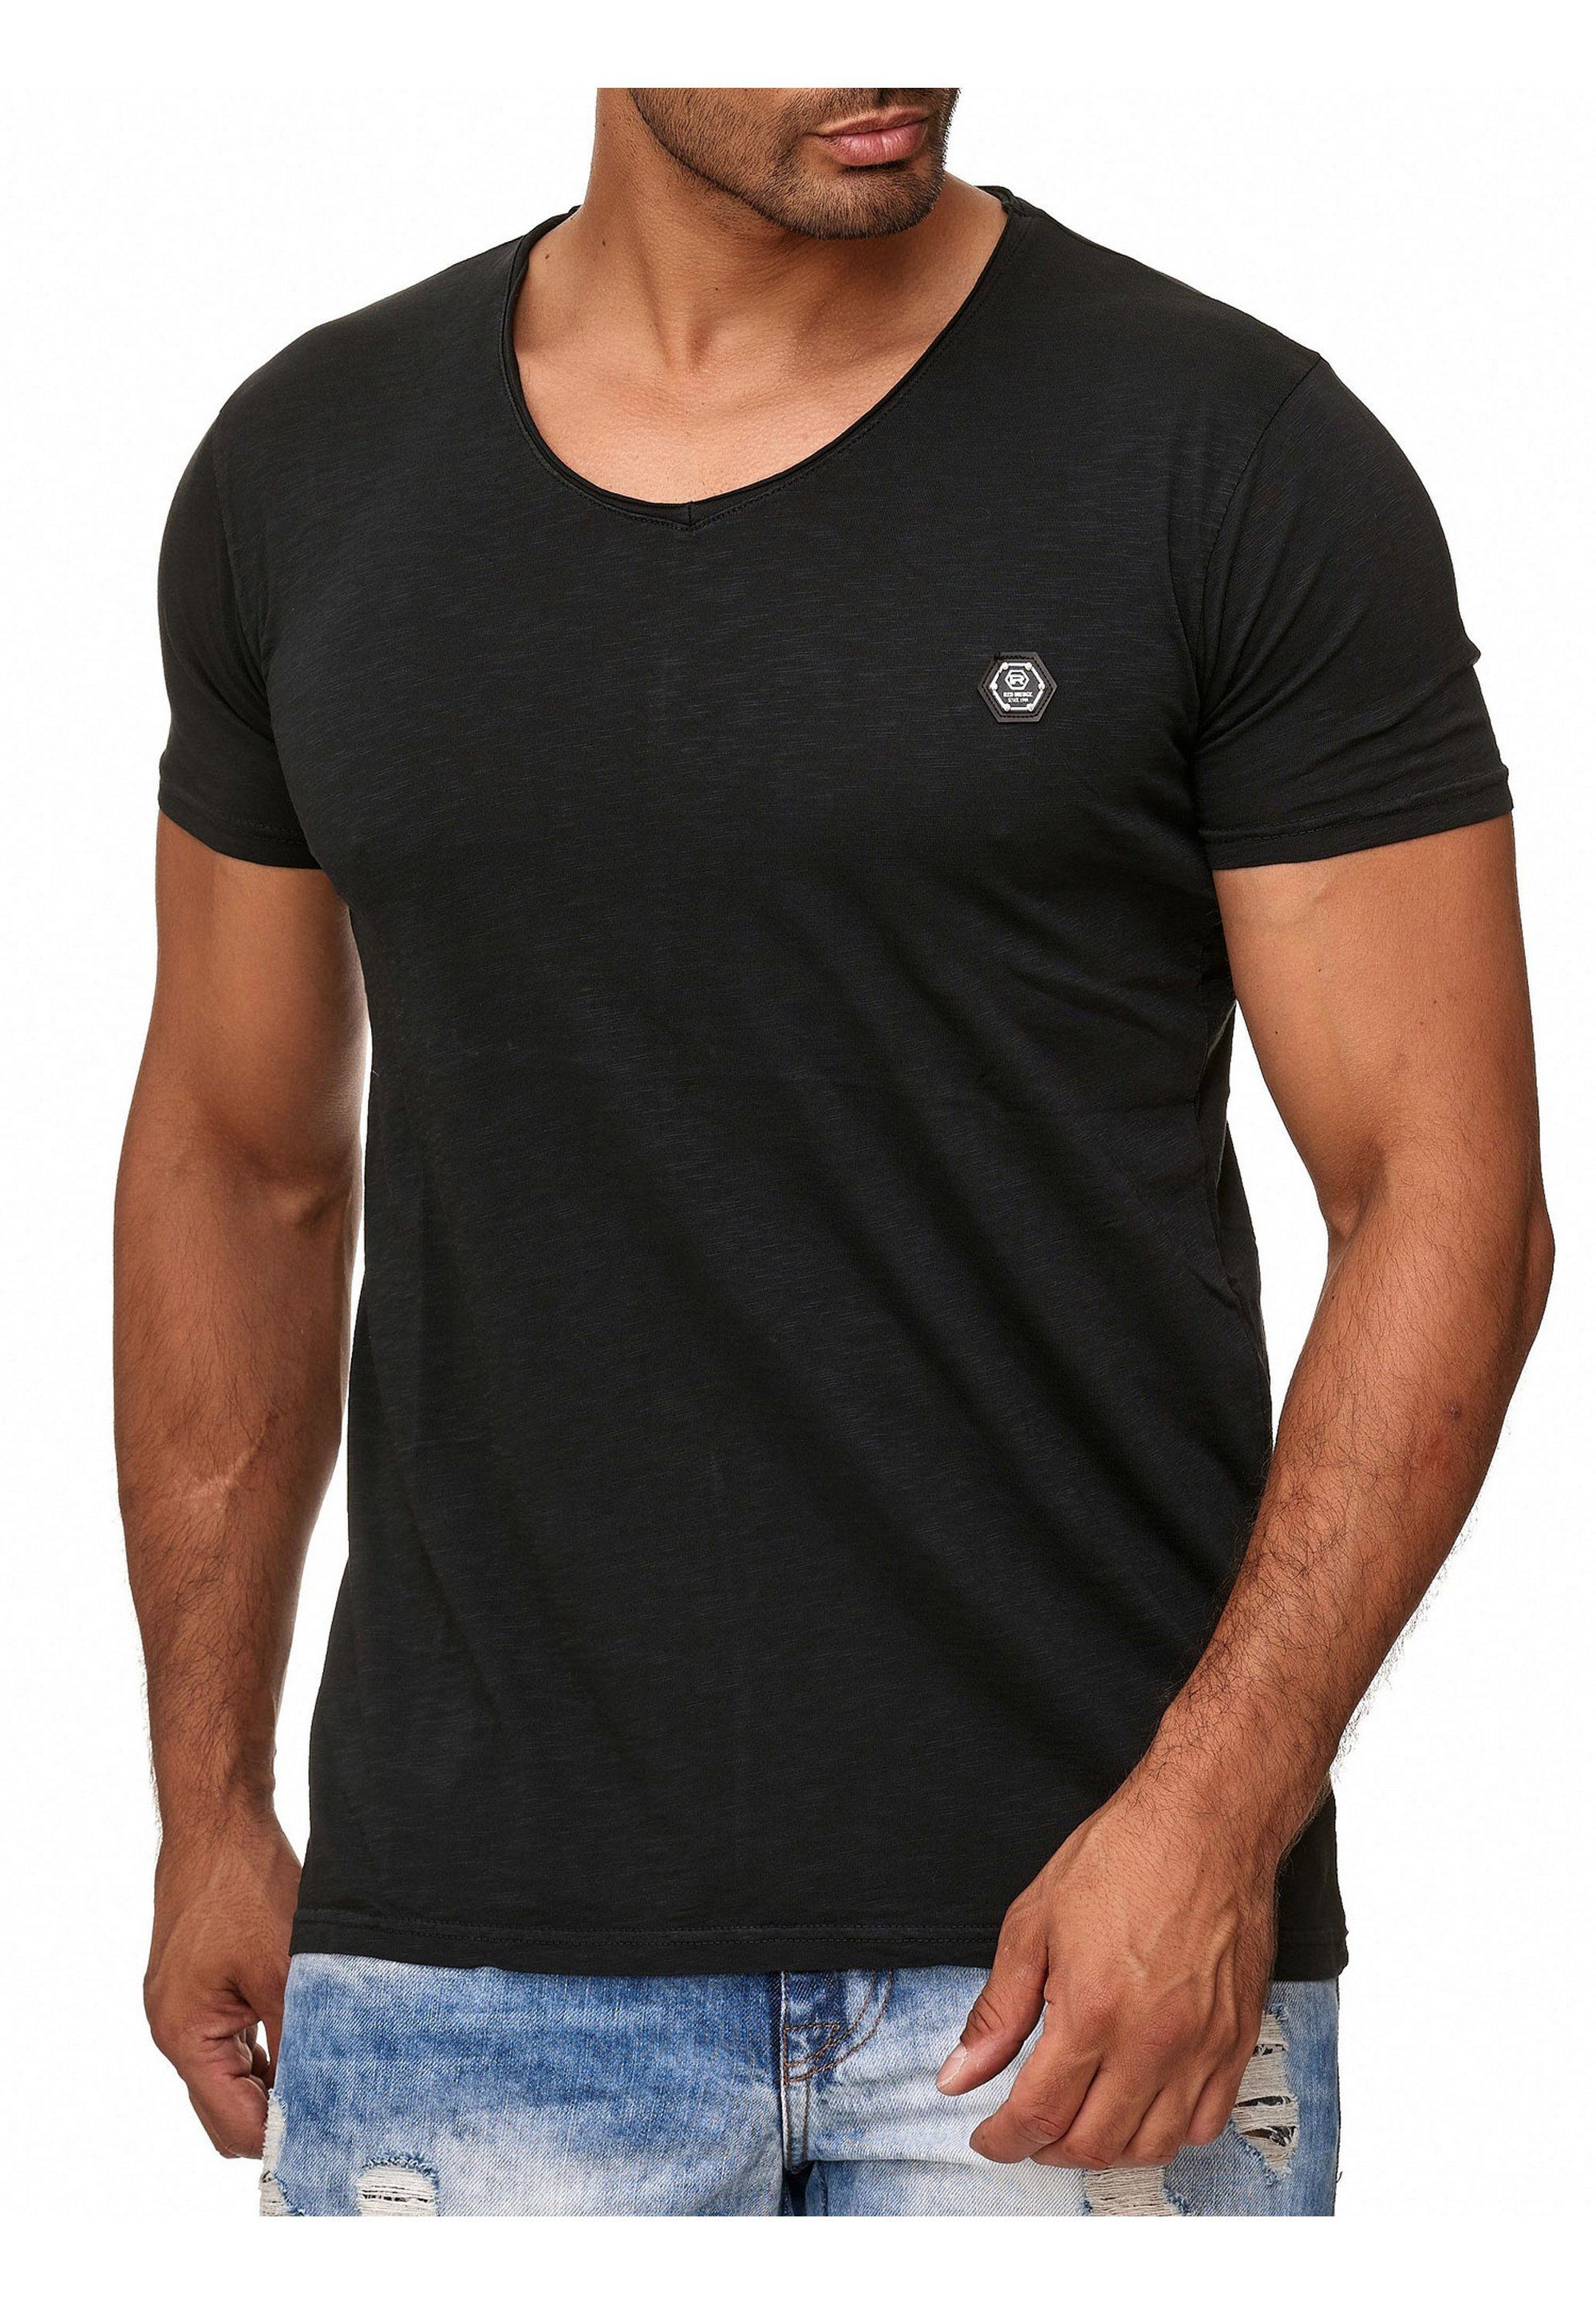 Design RedBridge lässigem schwarz T-Shirt Houston in